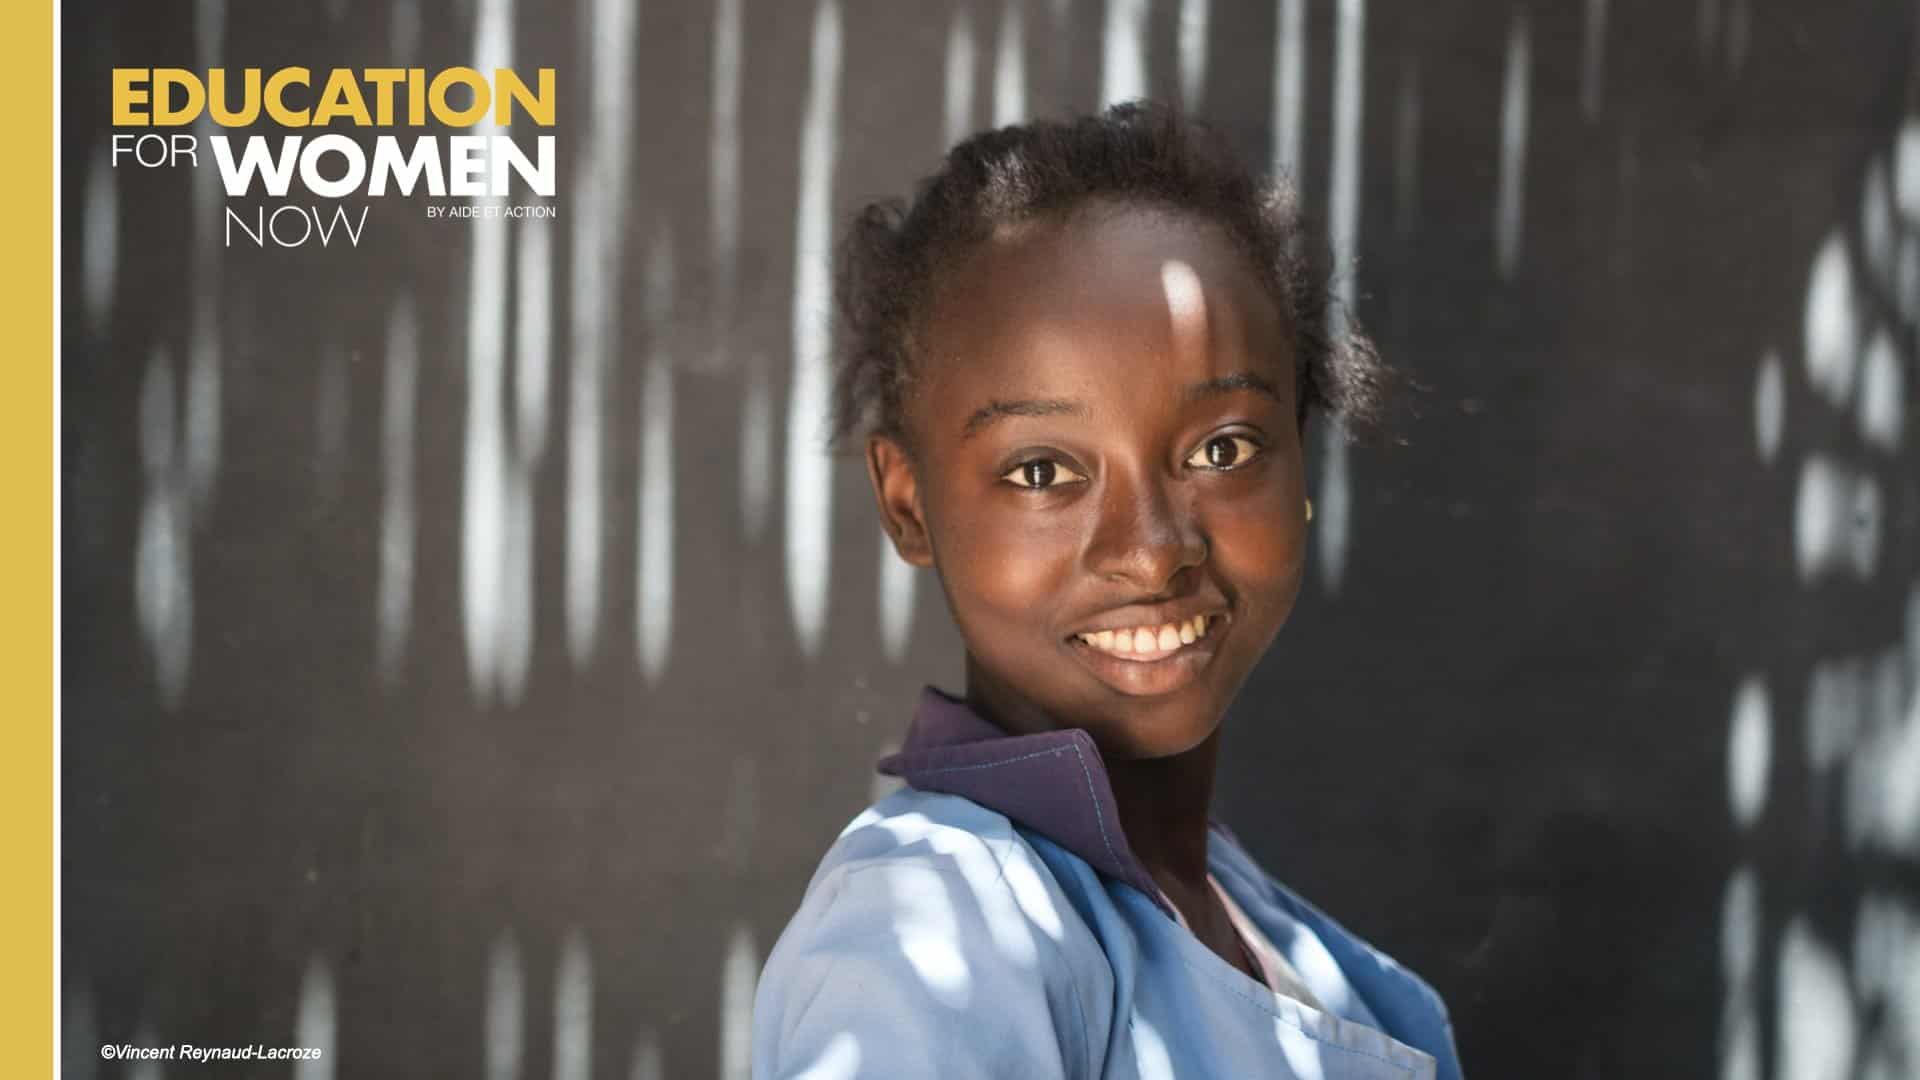 La campagne « Education for Women Now » vise à donner accès à l’éducation à 3 millions de femmes et de filles dans le monde